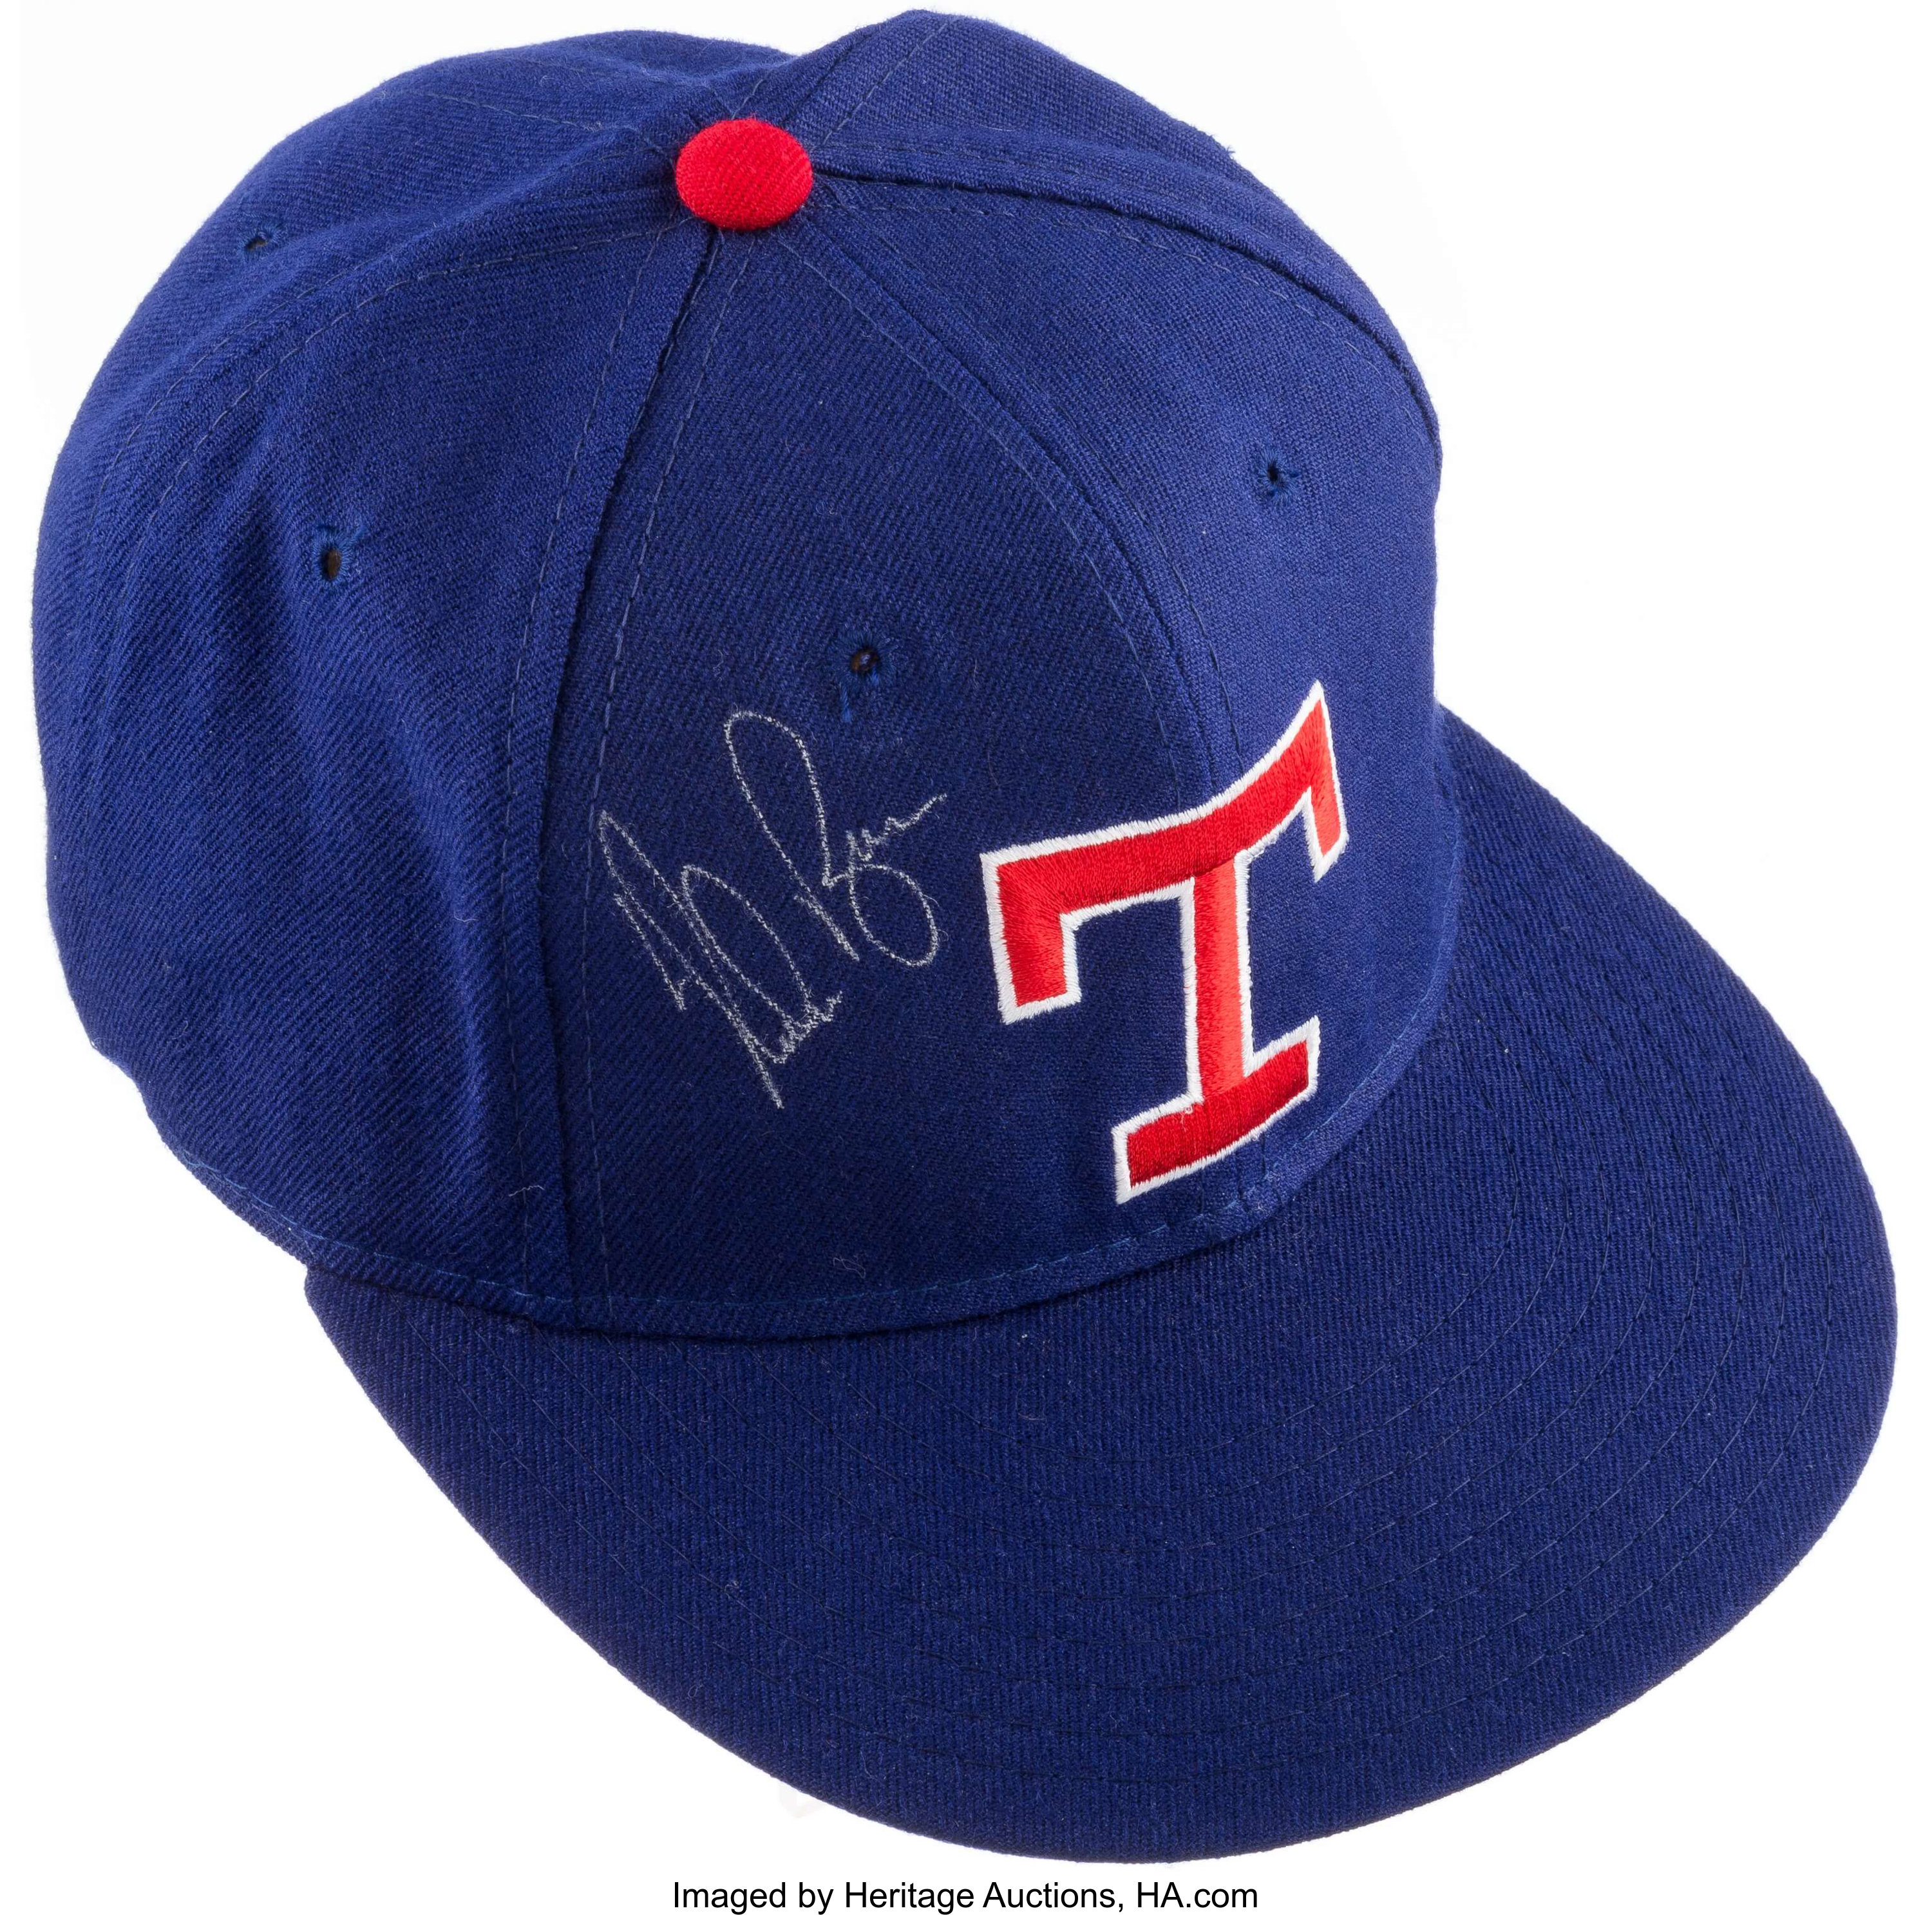 Nolan Ryan Signed Beckett (bas) Certified Texas Rangers Hat